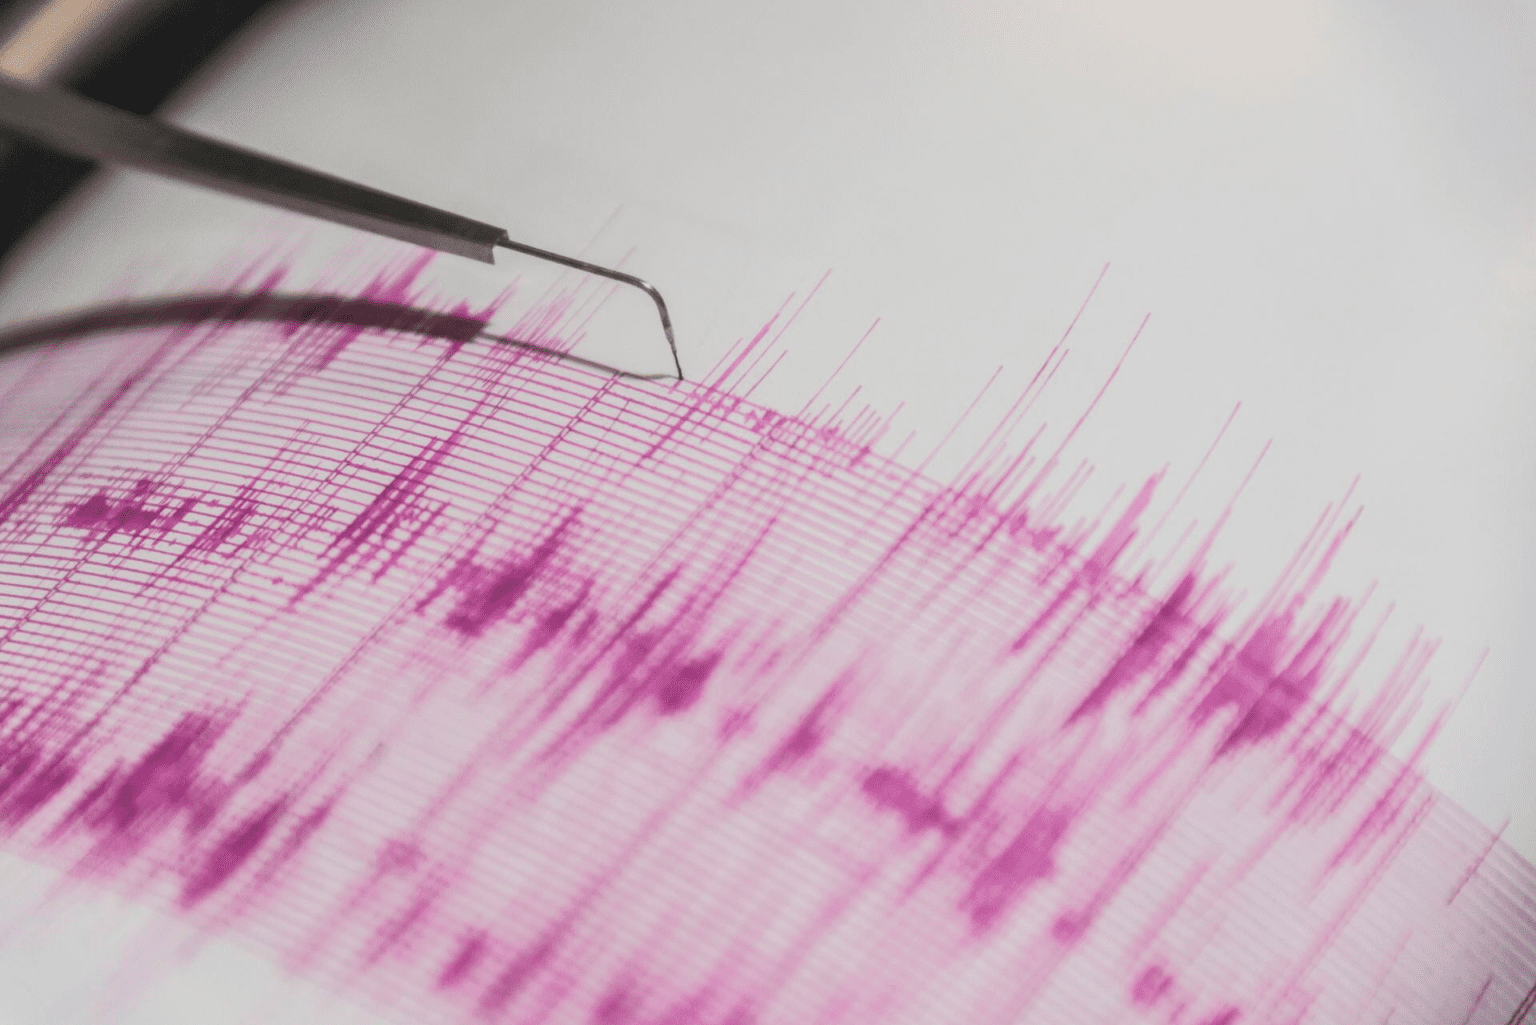 Un terremoto de magnitud 5,5 sacude el noroeste de China sin causar daños